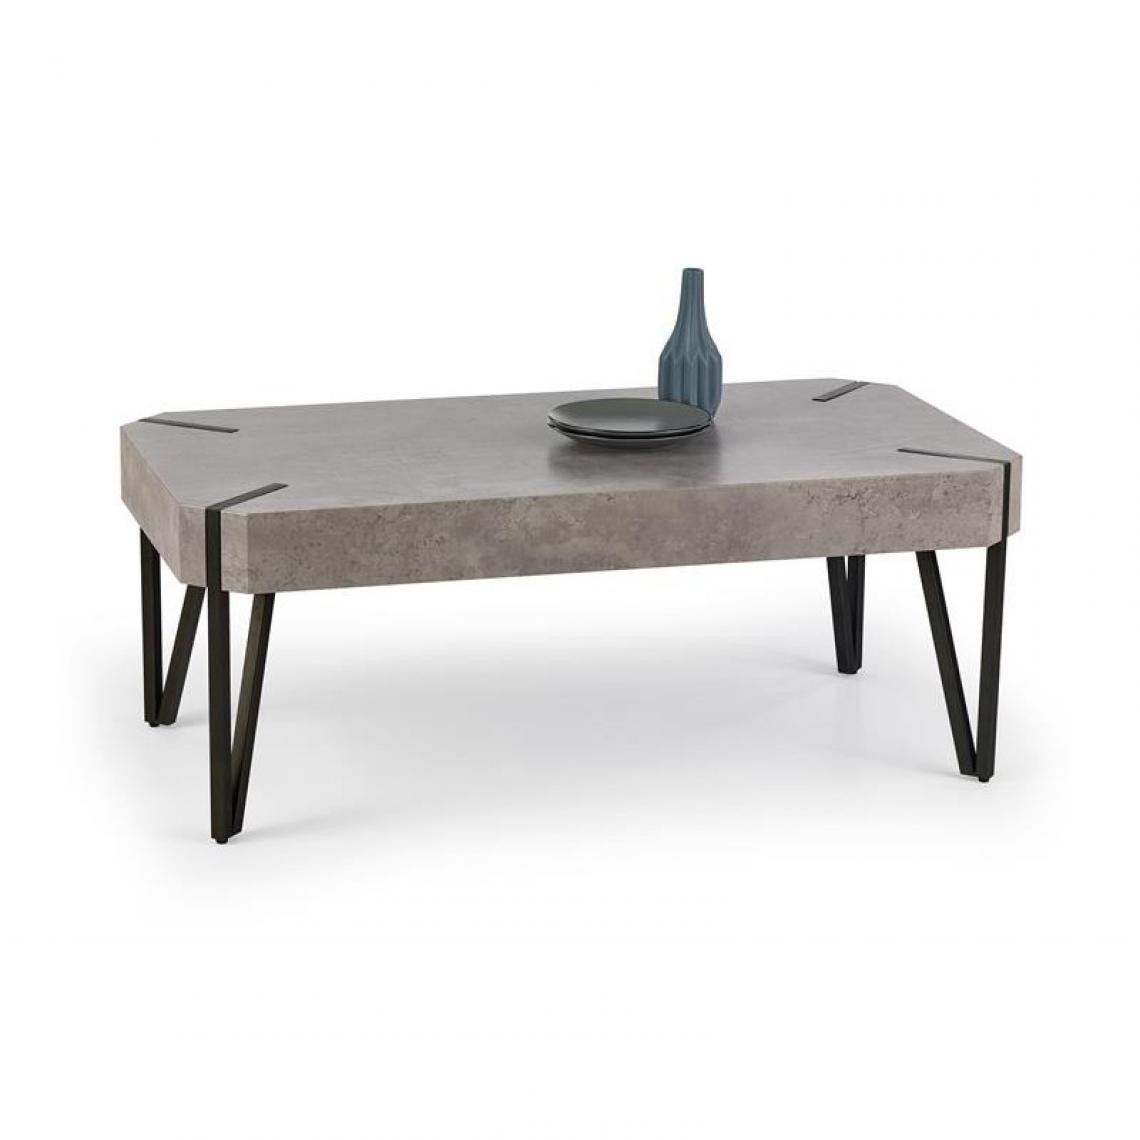 Carellia - Table basse 110 cm x 60 cm x 42 cm - Béton/Noir - Tables basses